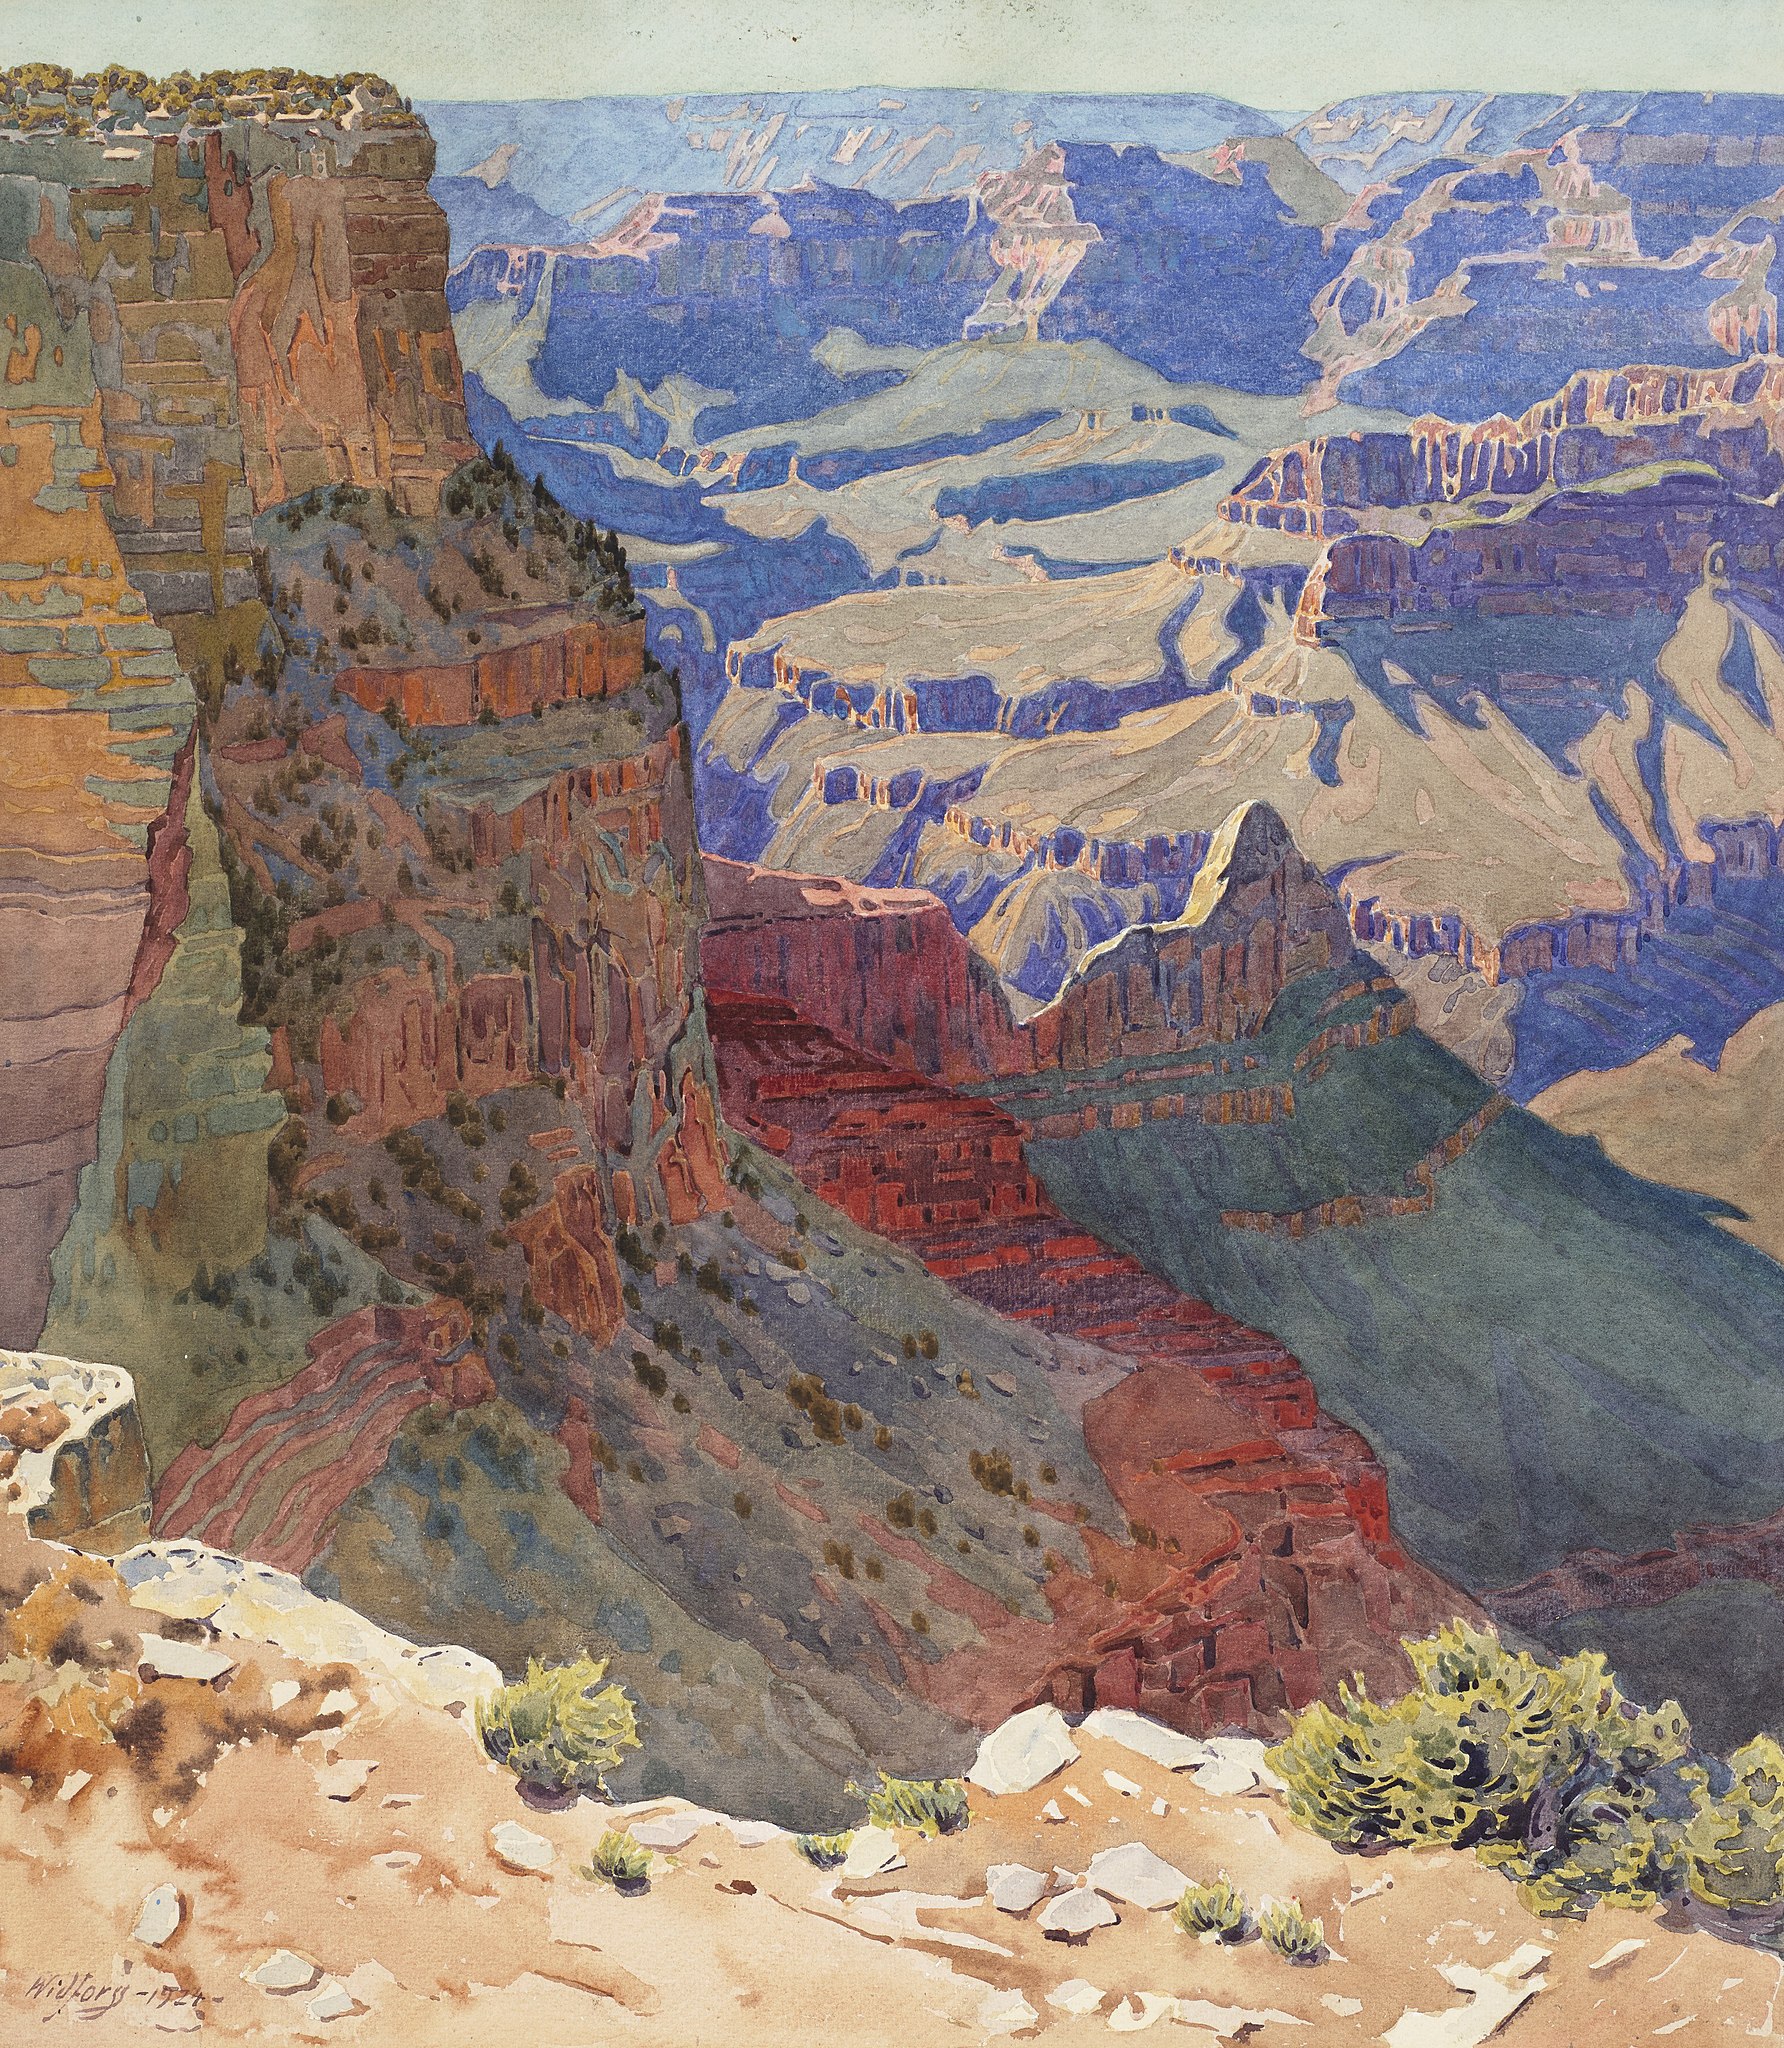 大峡谷 by 贡纳尔 维德福斯 - 1920年代末 - 50.8 x 44.5 cm 